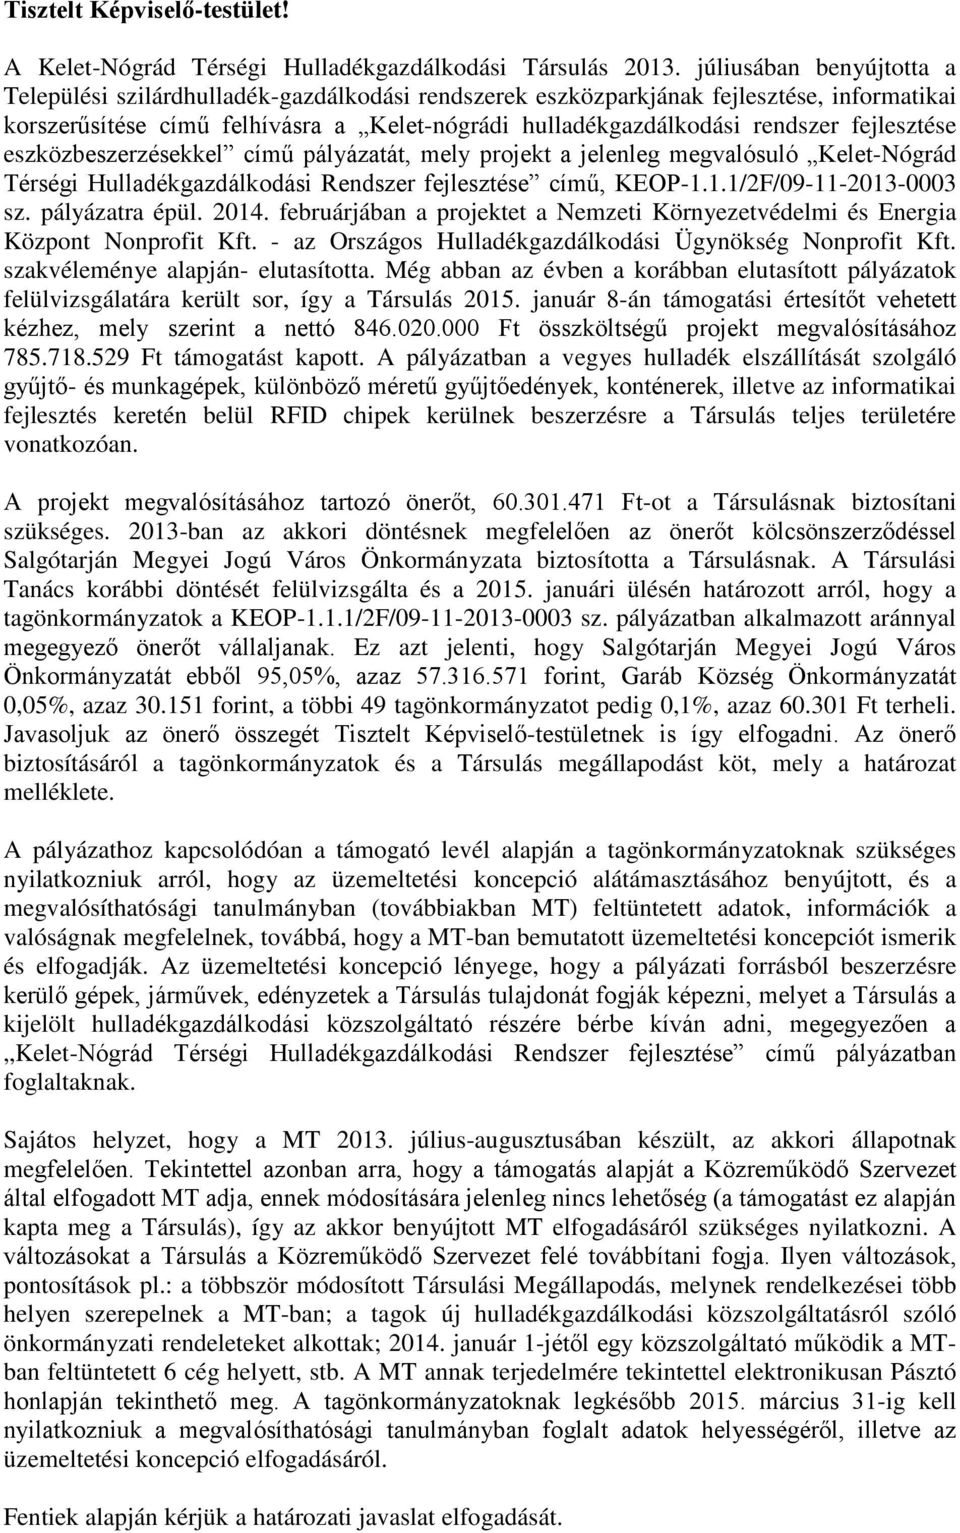 fejlesztése eszközbeszerzésekkel című pályázatát, mely projekt a jelenleg megvalósuló Kelet-Nógrád Térségi Hulladékgazdálkodási Rendszer fejlesztése című, KEOP-1.1.1/2F/09-11-2013-0003 sz.